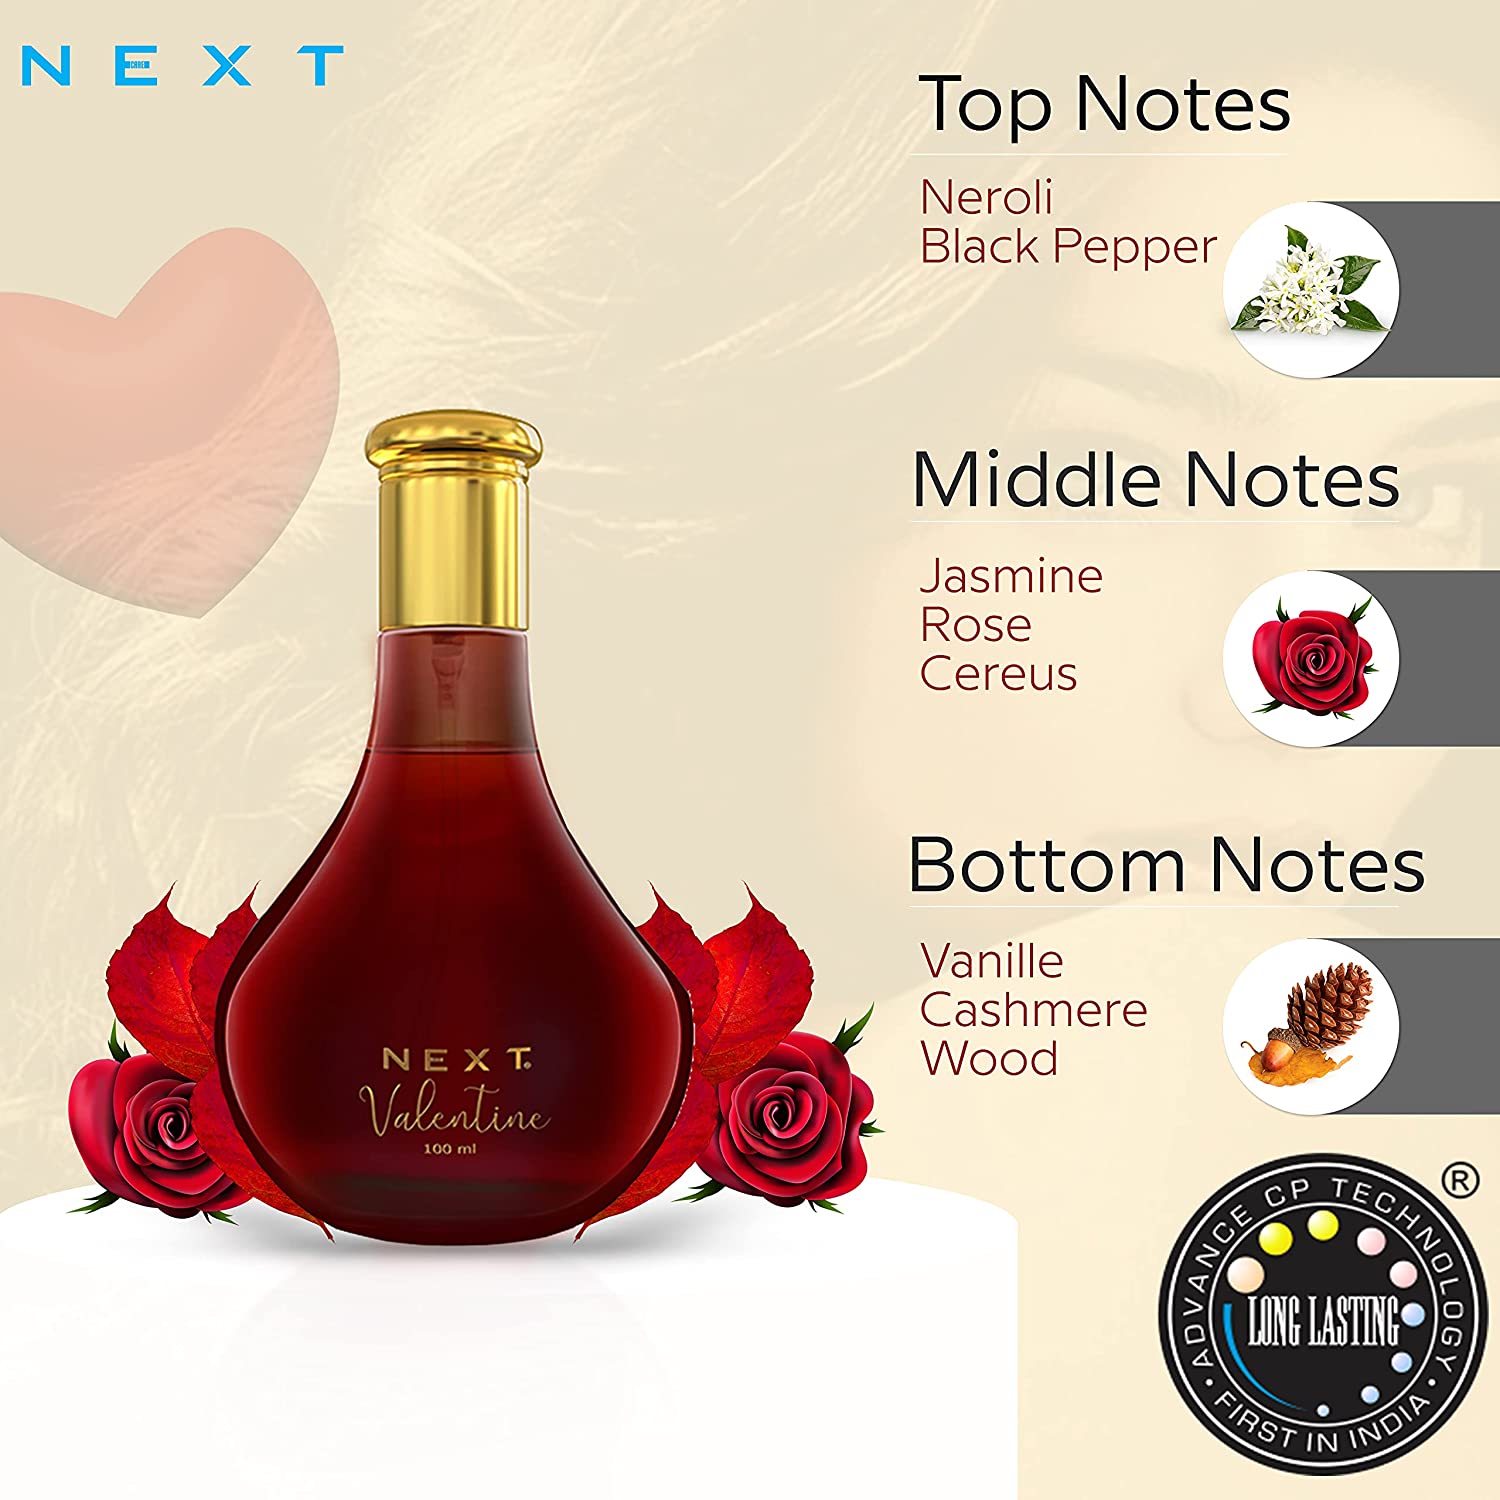 NEXT Valentine Long Lasting Eau De Perfume for Women -100 ML